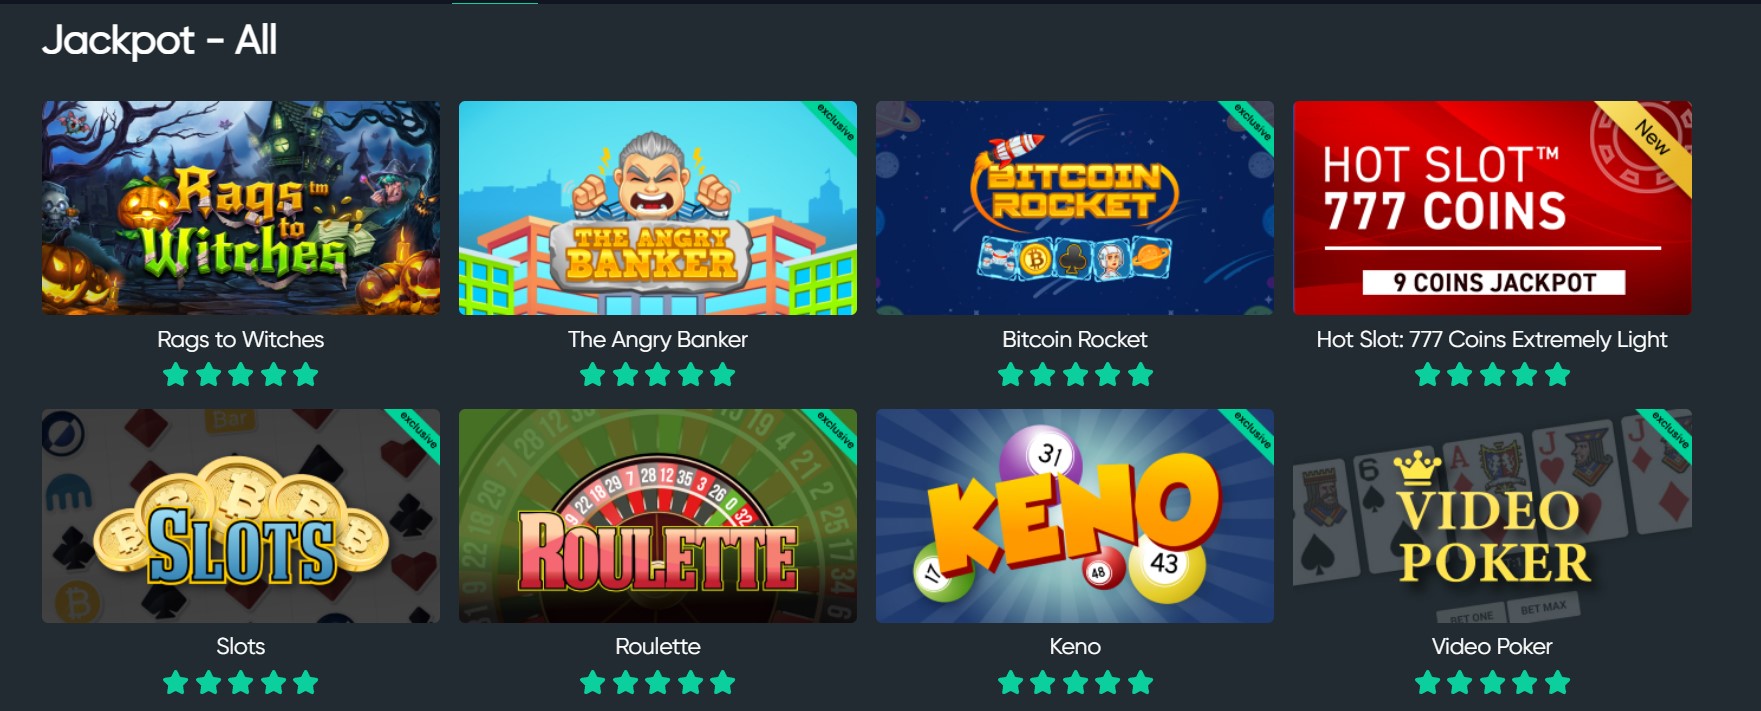 giochi jackpot bitcoin.com